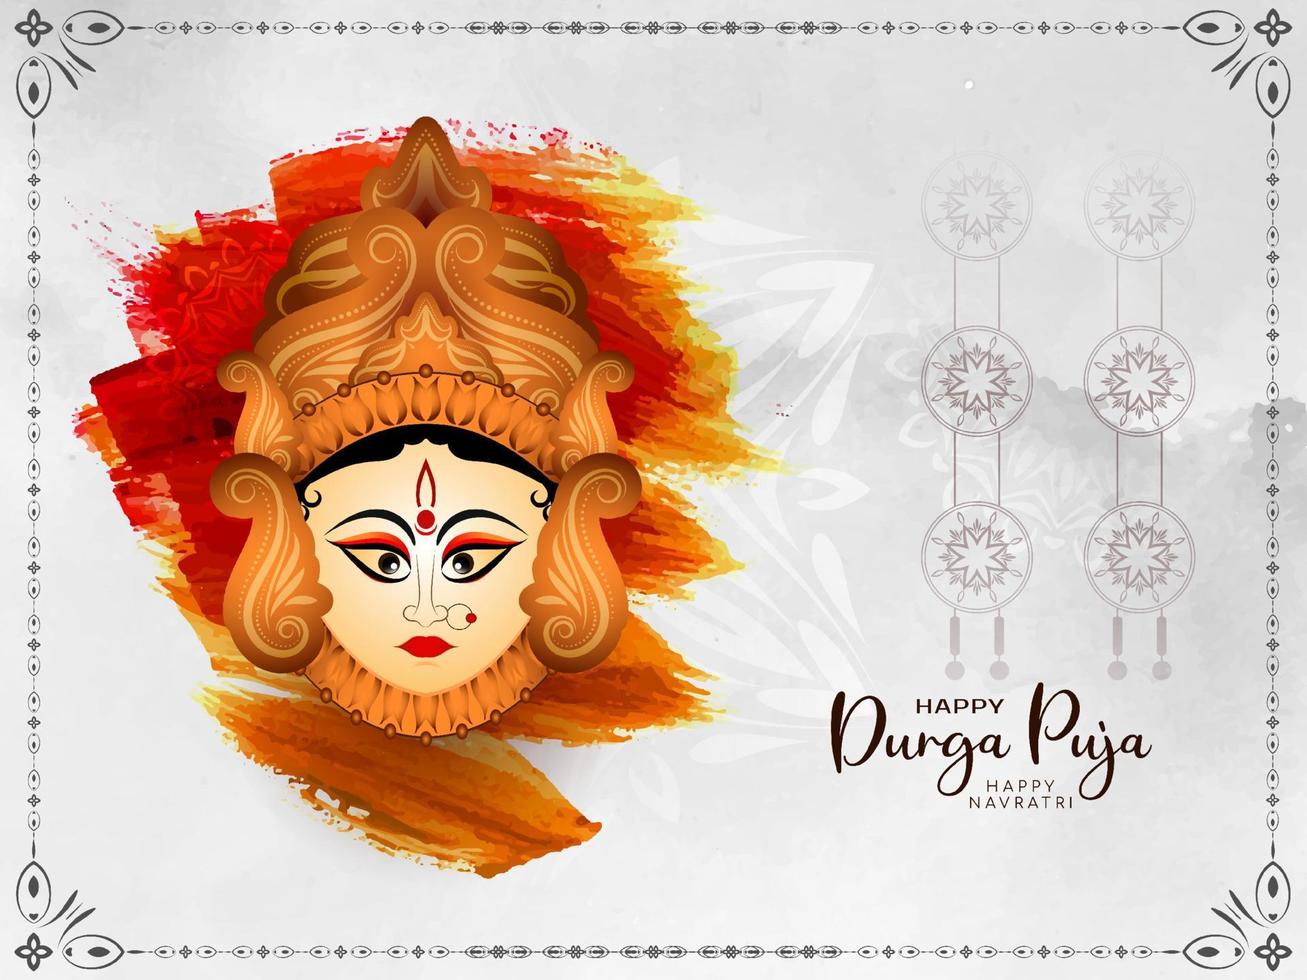 bellissimo contento Navratri e Durga puja Festival celebrazione saluto carta vettore